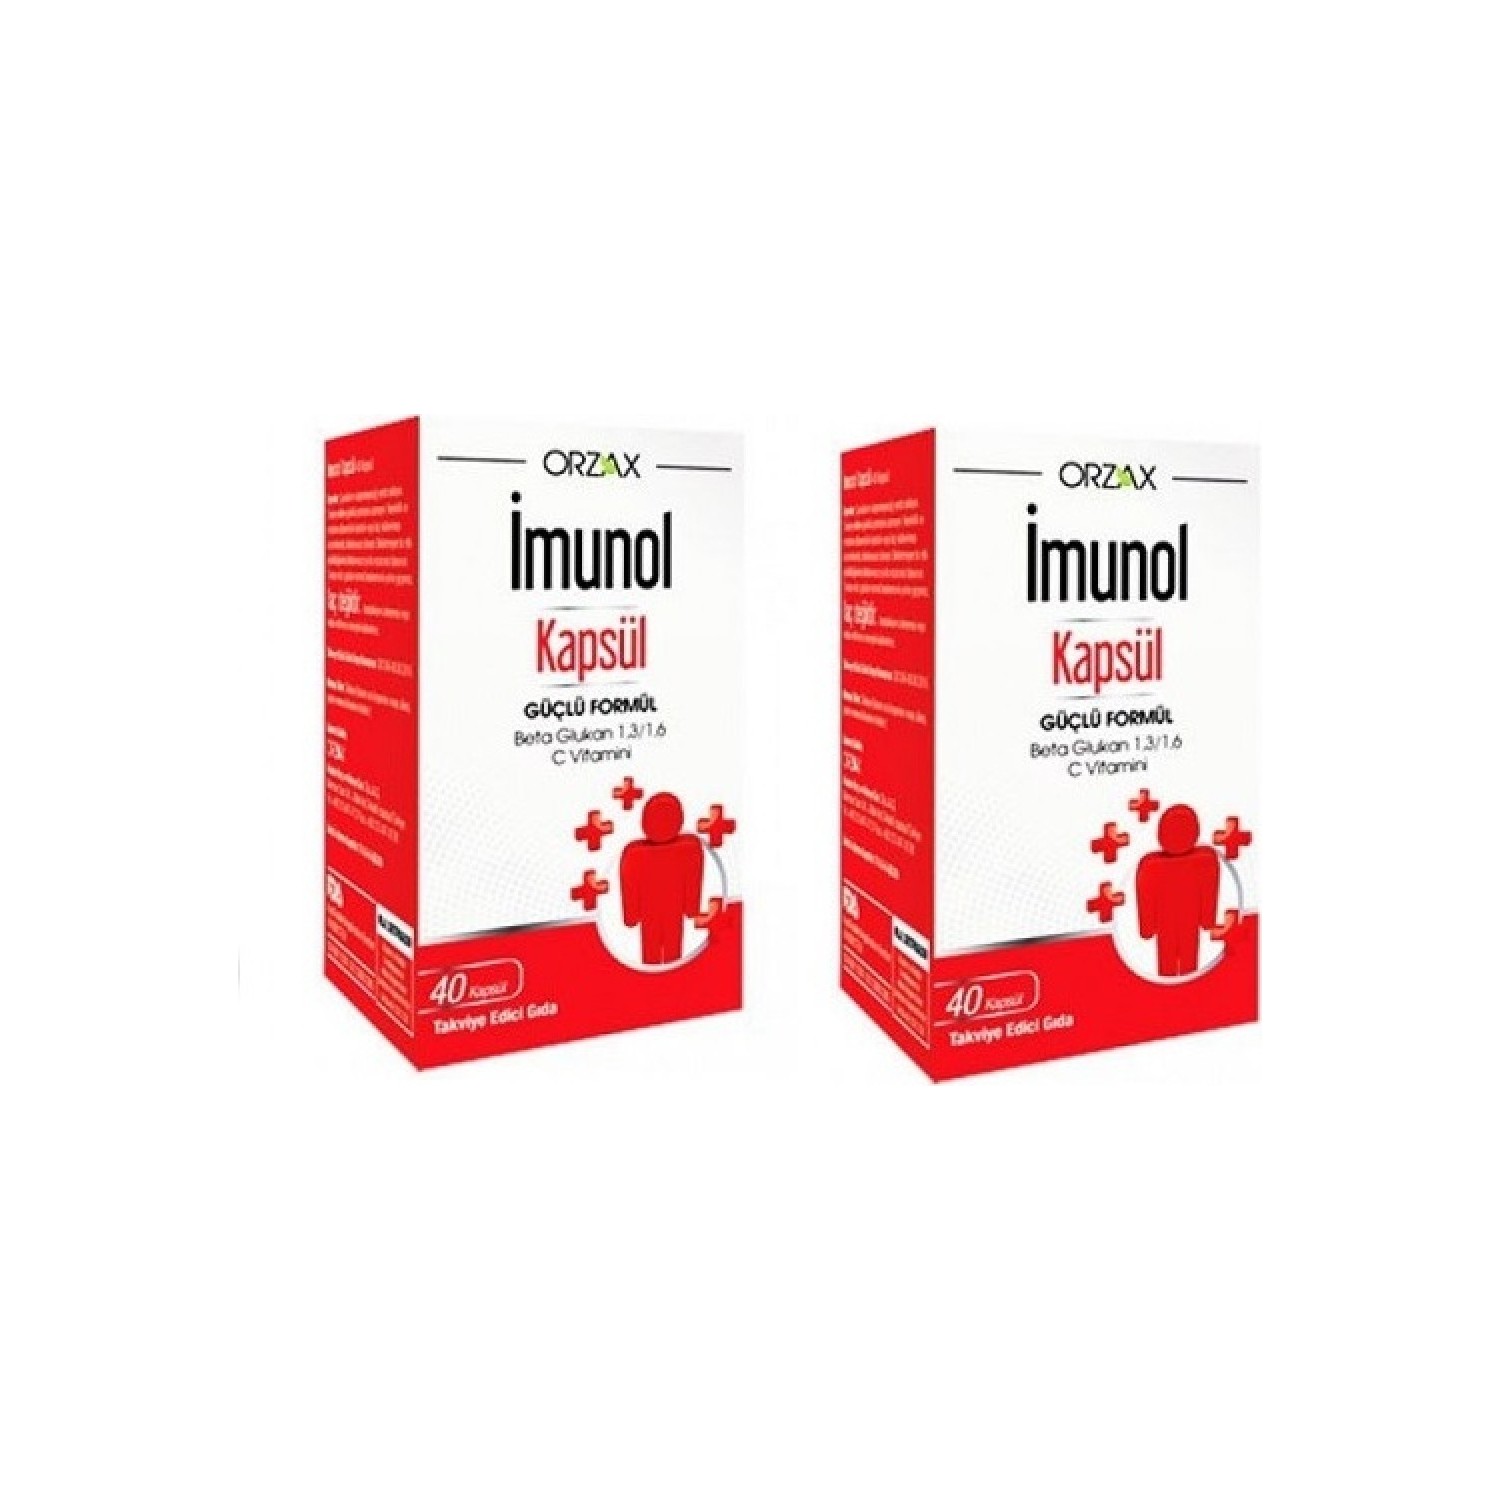 цена Пищевая добавка Orzax Imunol Herbal, 2 упаковки по 40 капсул